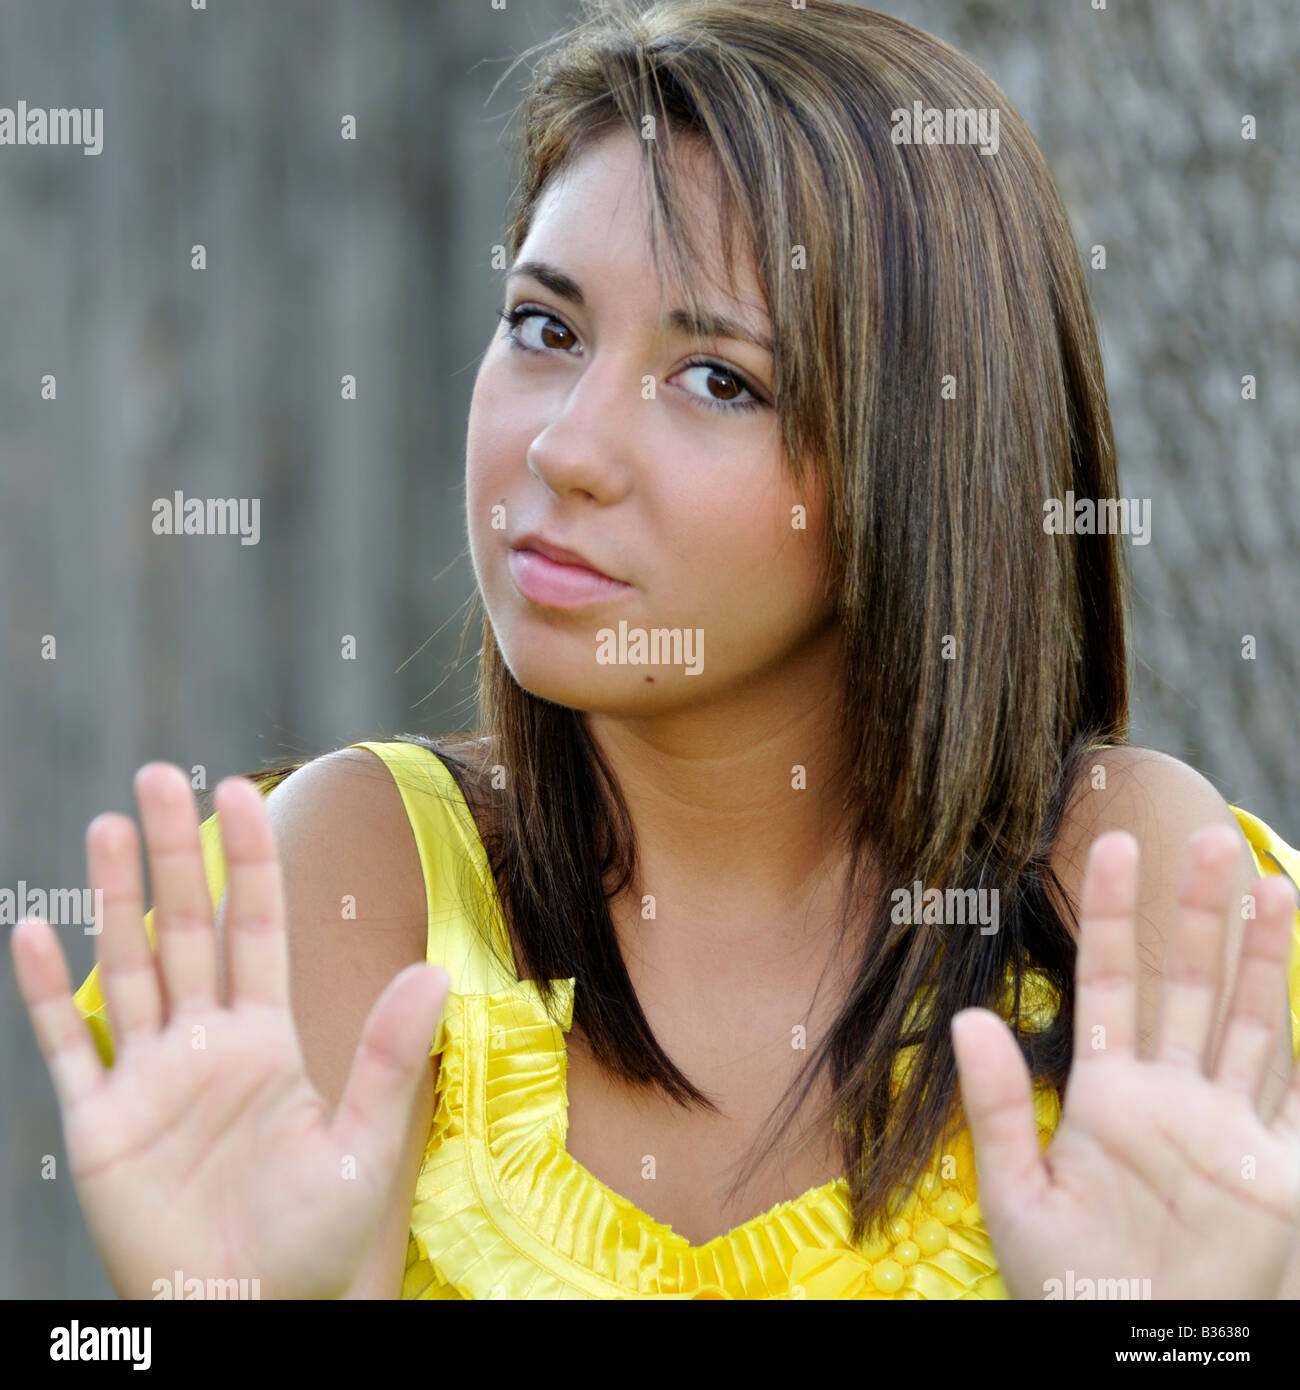 Un vecchio anno 16 bella ragazza caucasica, marrone capelli, occhi marroni, tiene le mani in un scongiurare gesto. Immagine concettuale. Foto Stock